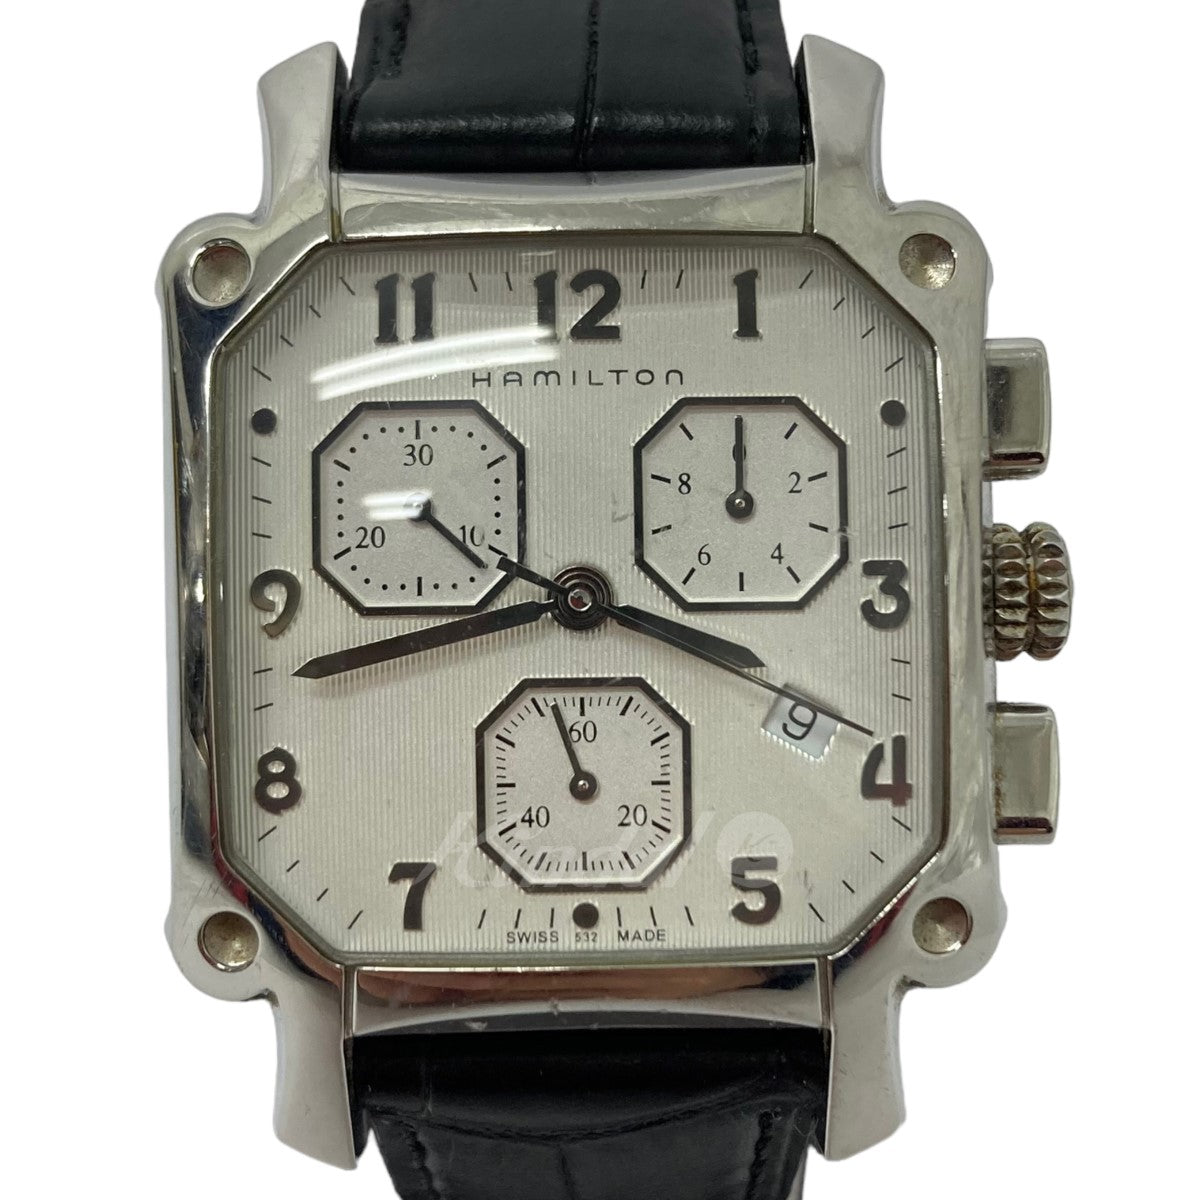 HAMILTON(ハミルトン) ロイドクロノグラフ腕時計